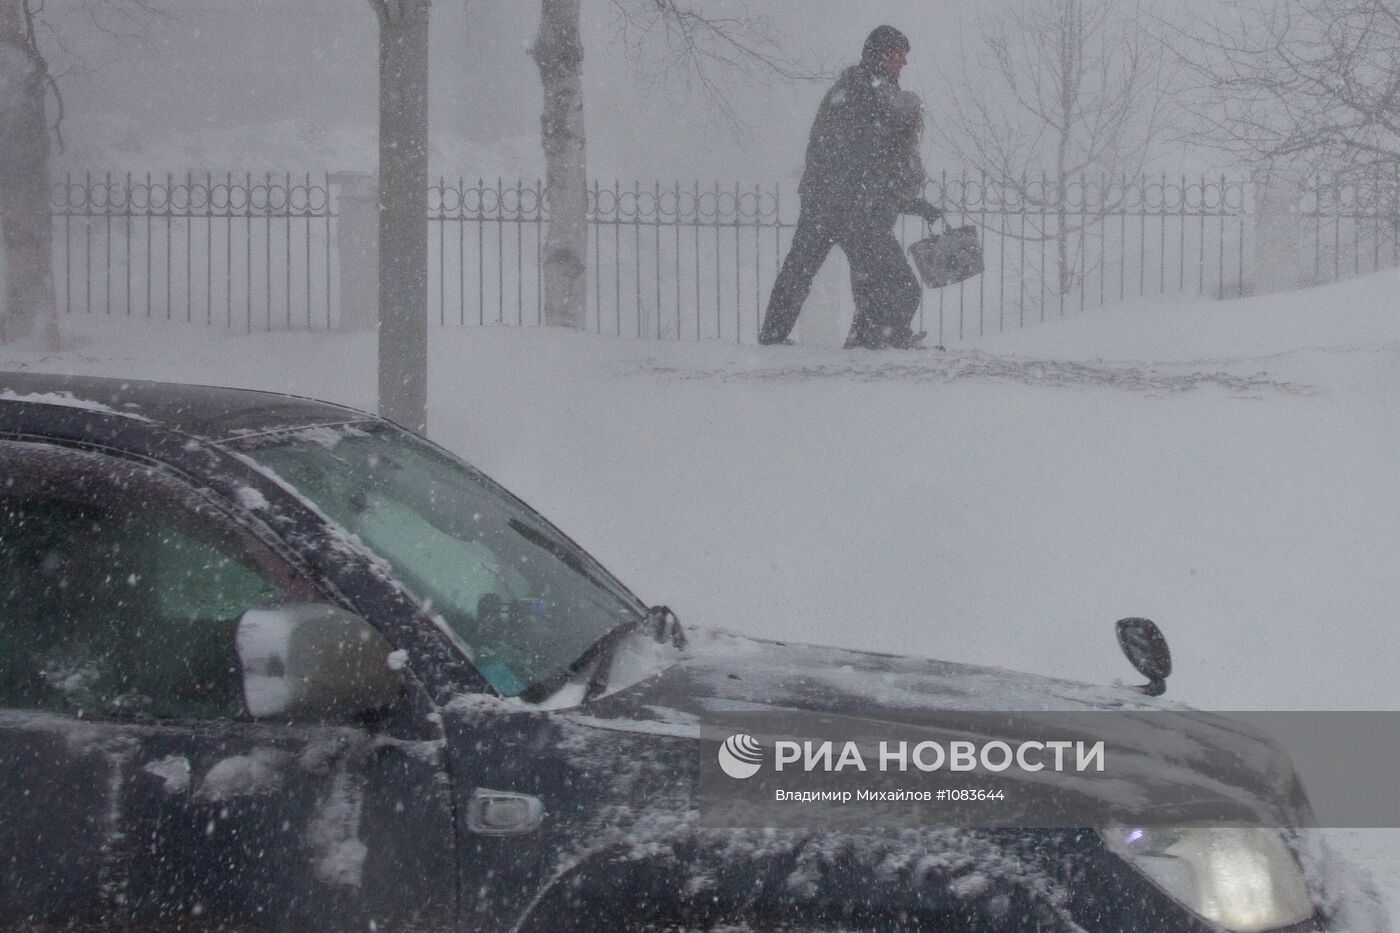 Снежный циклон в Южно-Сахалинске